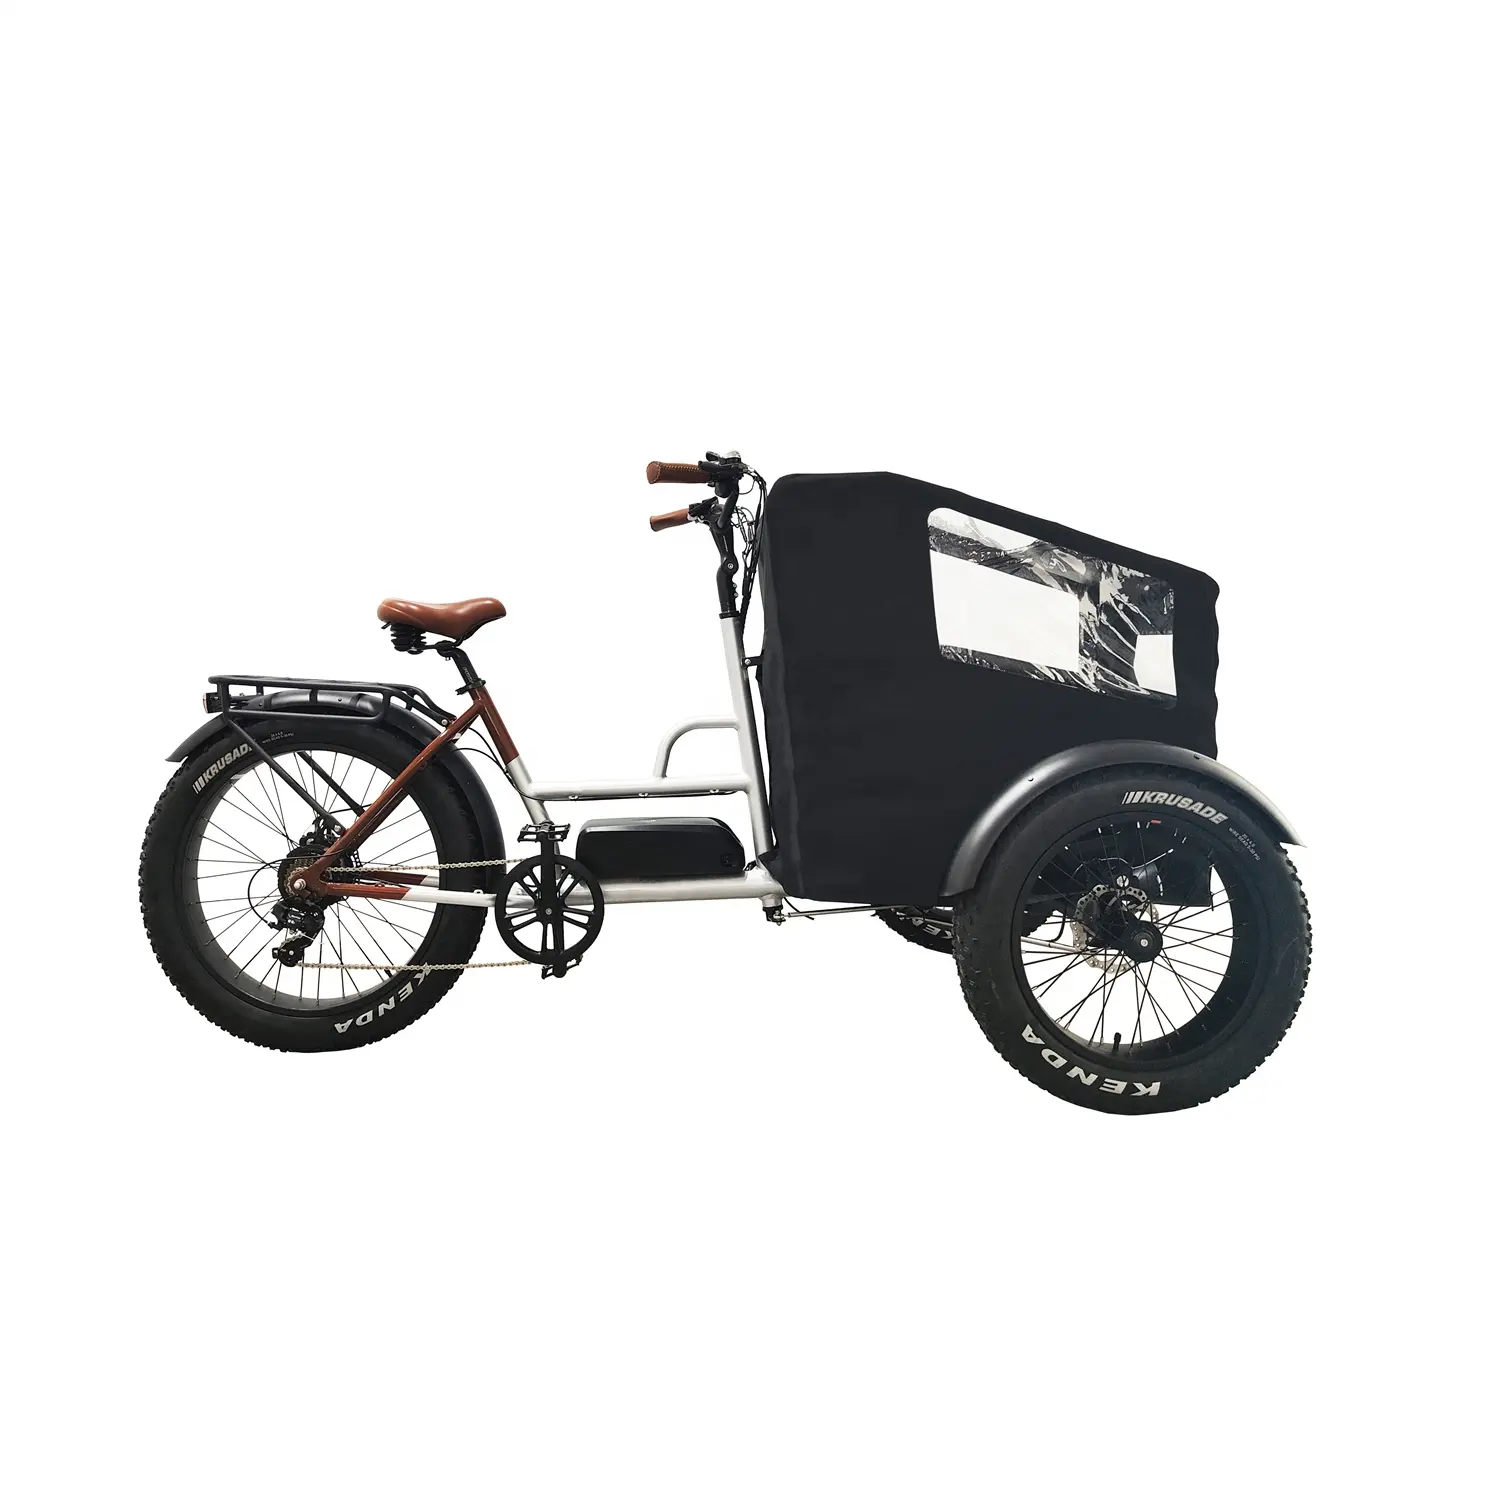 Commercio all'ingrosso 7 velocità 3 ruote 26 "telaio in lega triciclo bici da carico elettrica con copertura anteriore olandese e pioggia